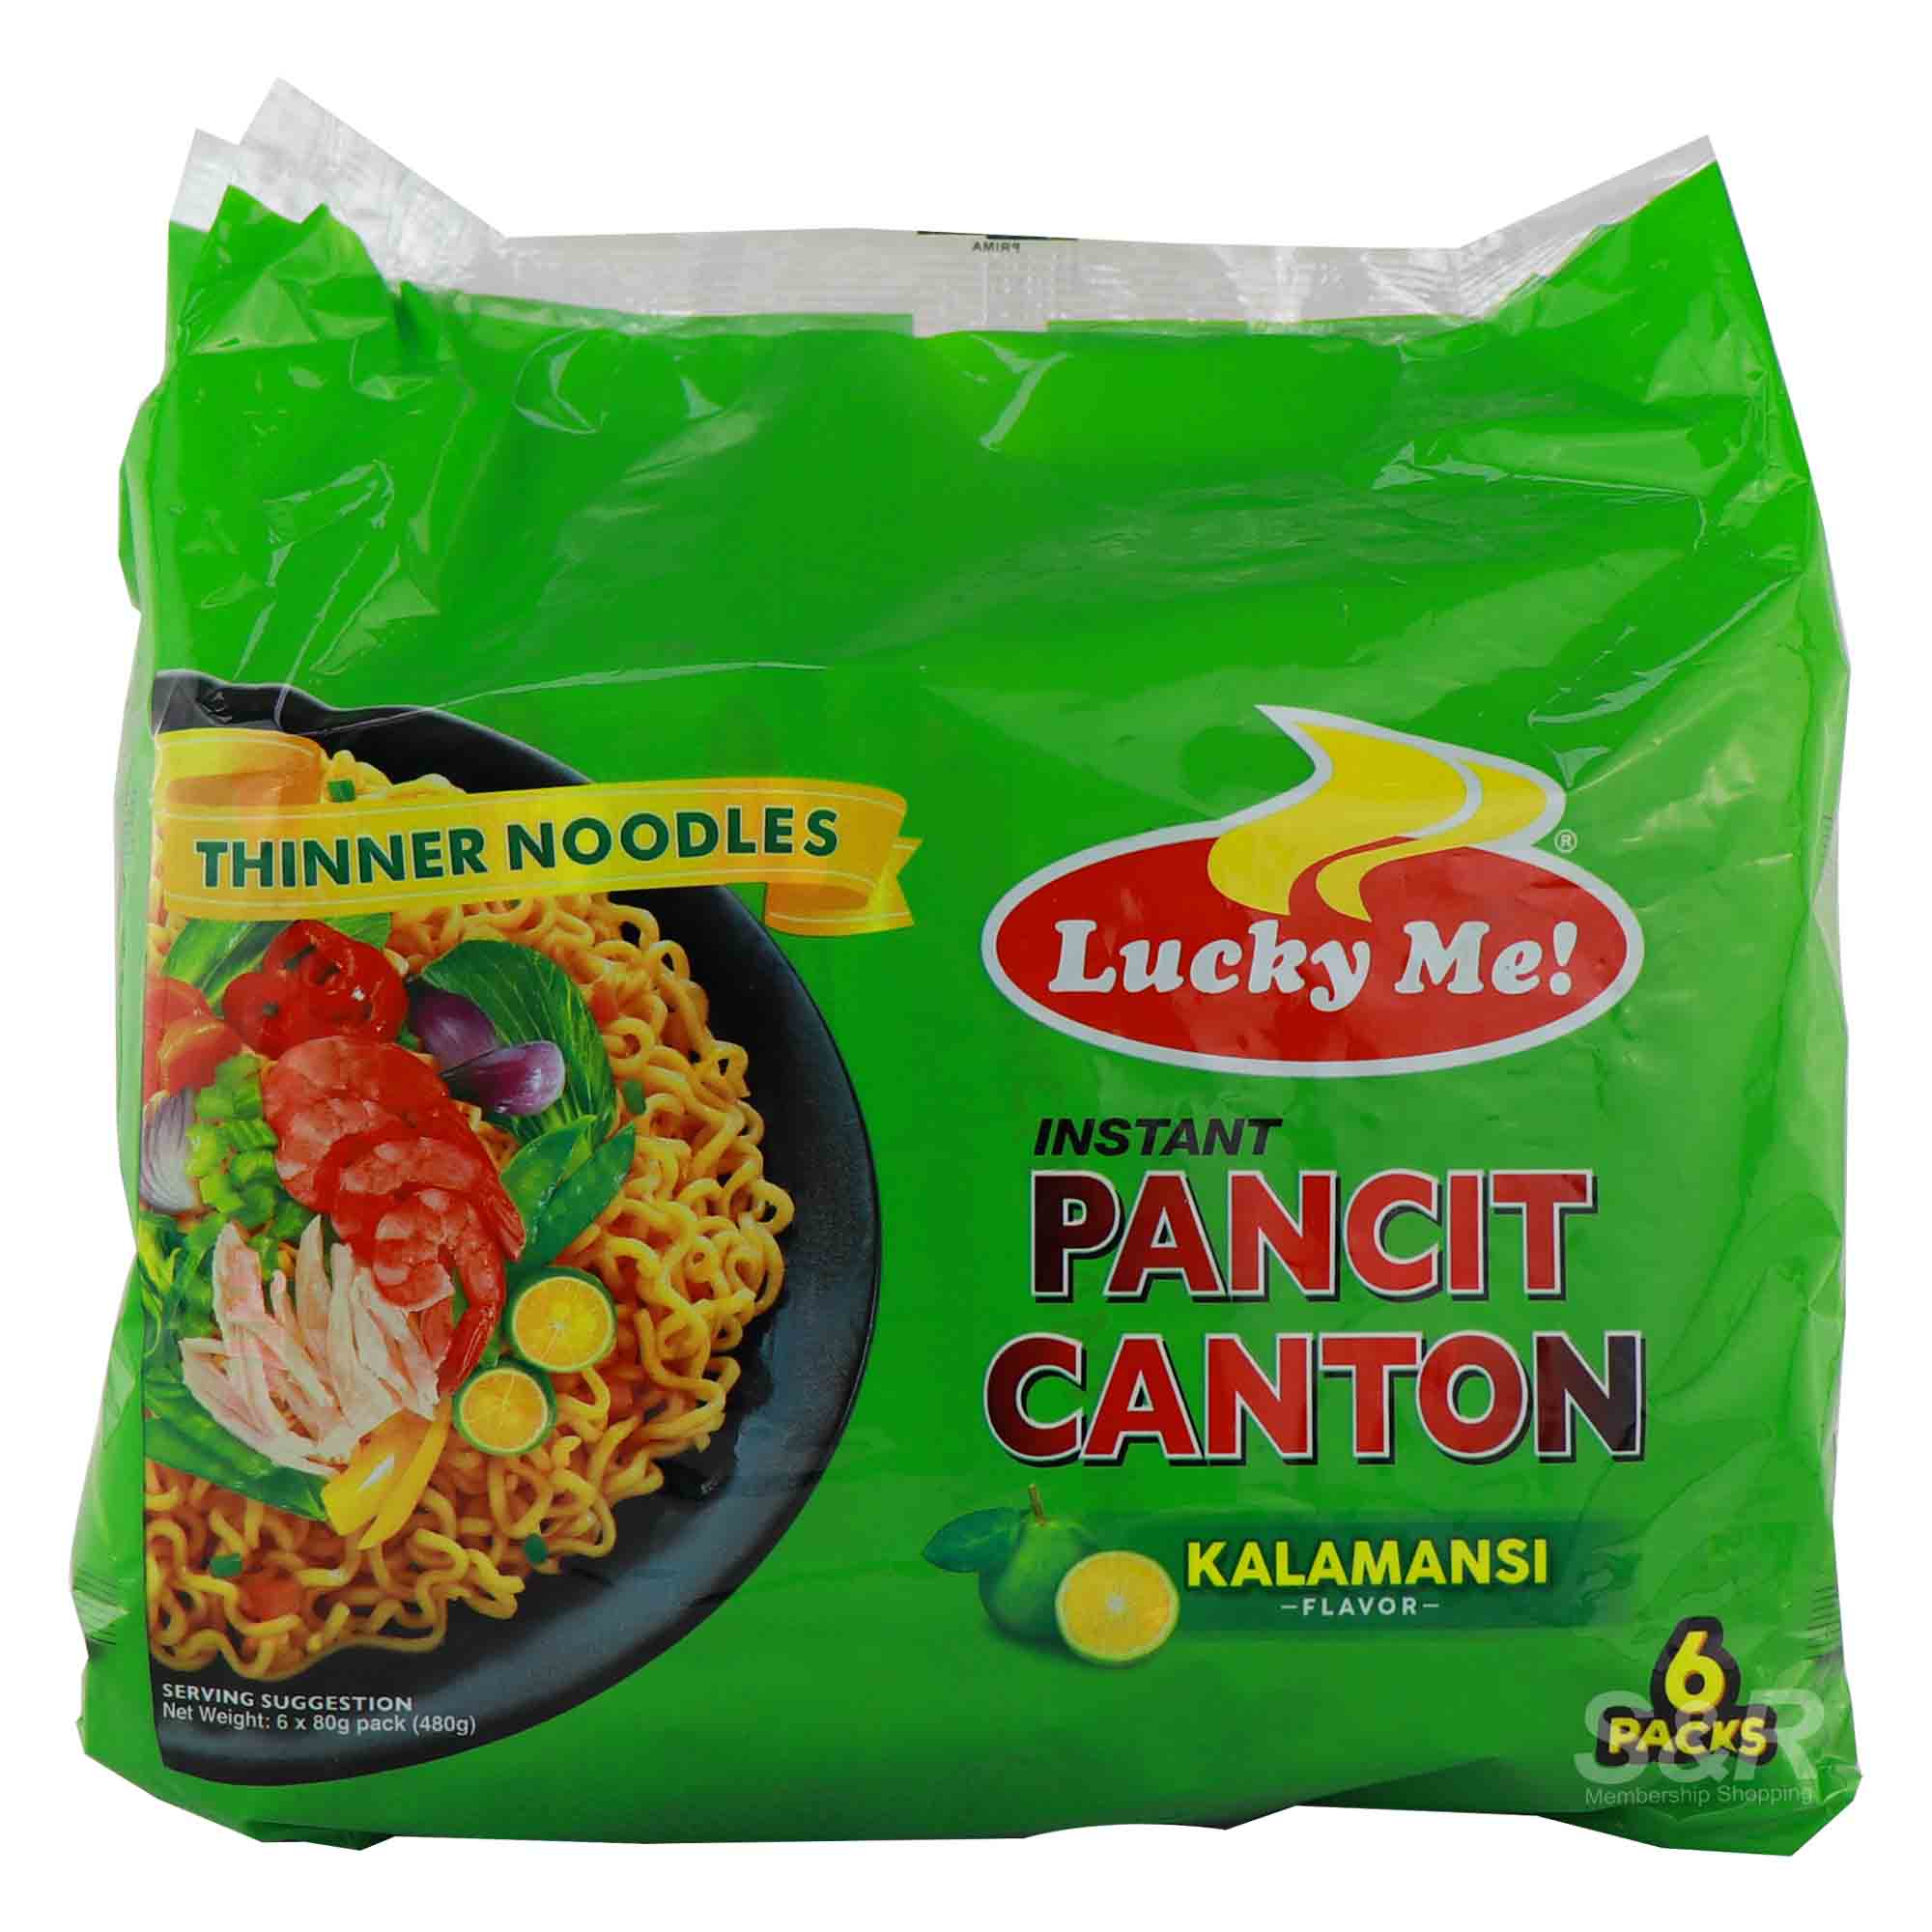 Lucky Me! Instant Pancit Canton Kalamansi Flavor 6pcs